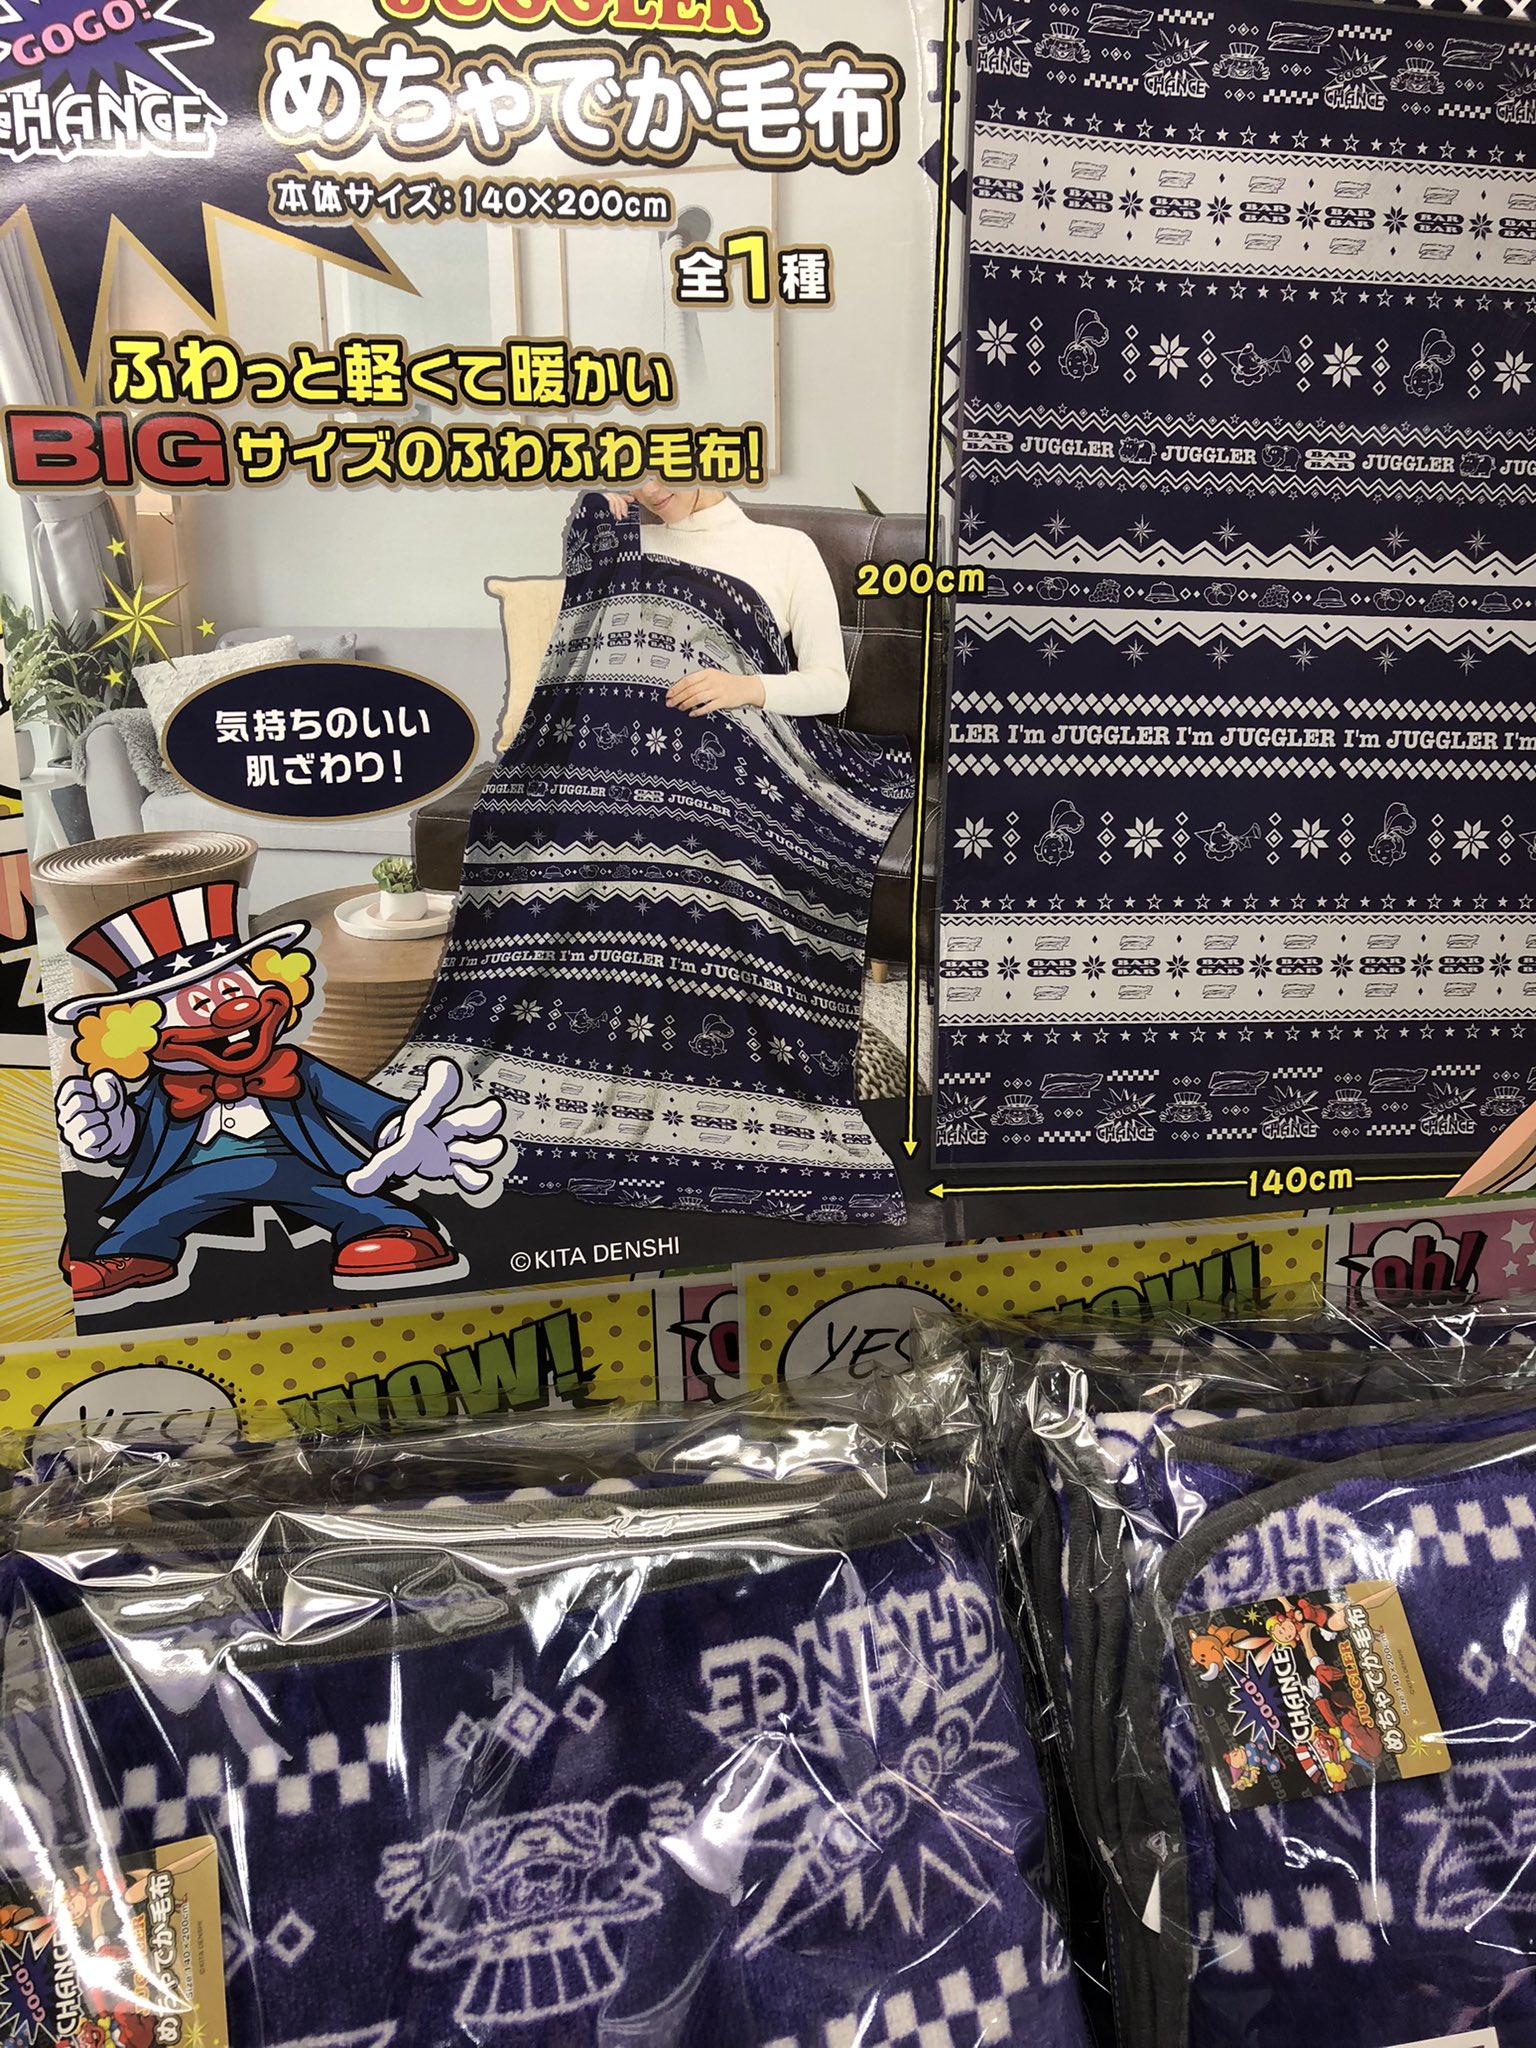 ジャグラーめちゃでか毛布 | www.noah-digital.co.jp